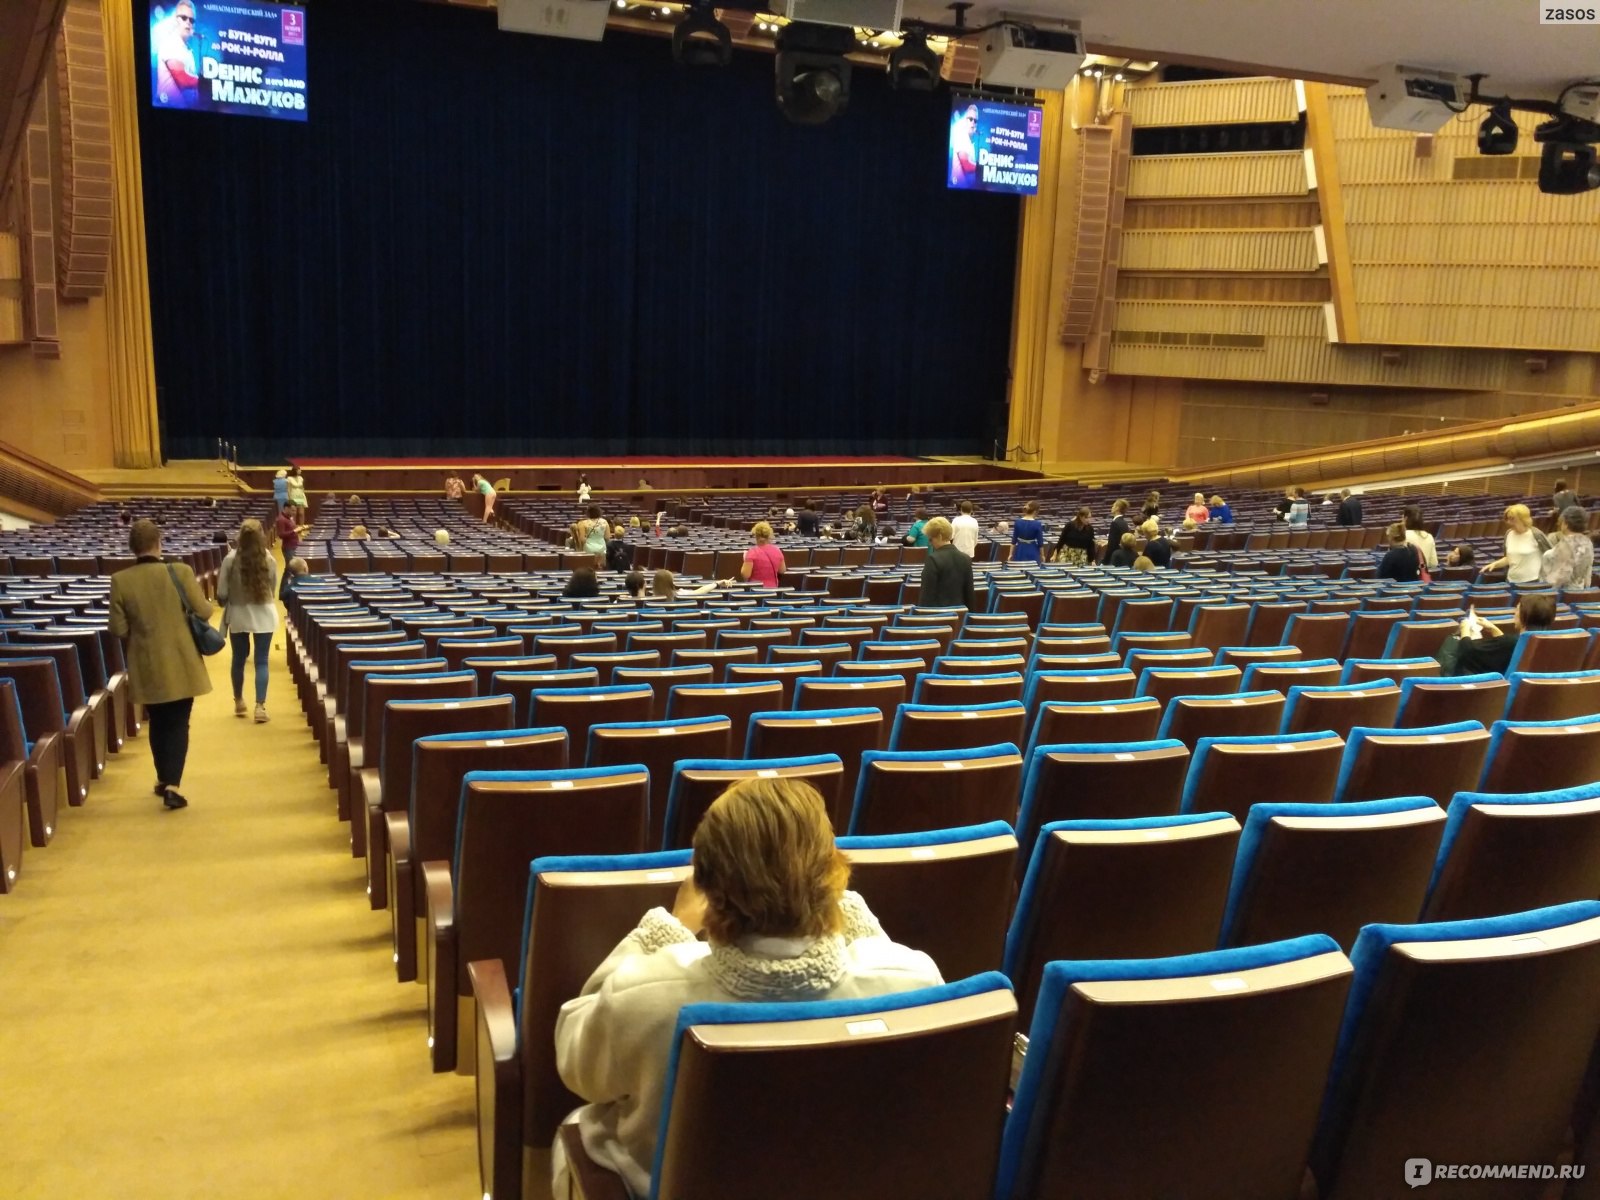 кремлевский дворец концертный большой зал